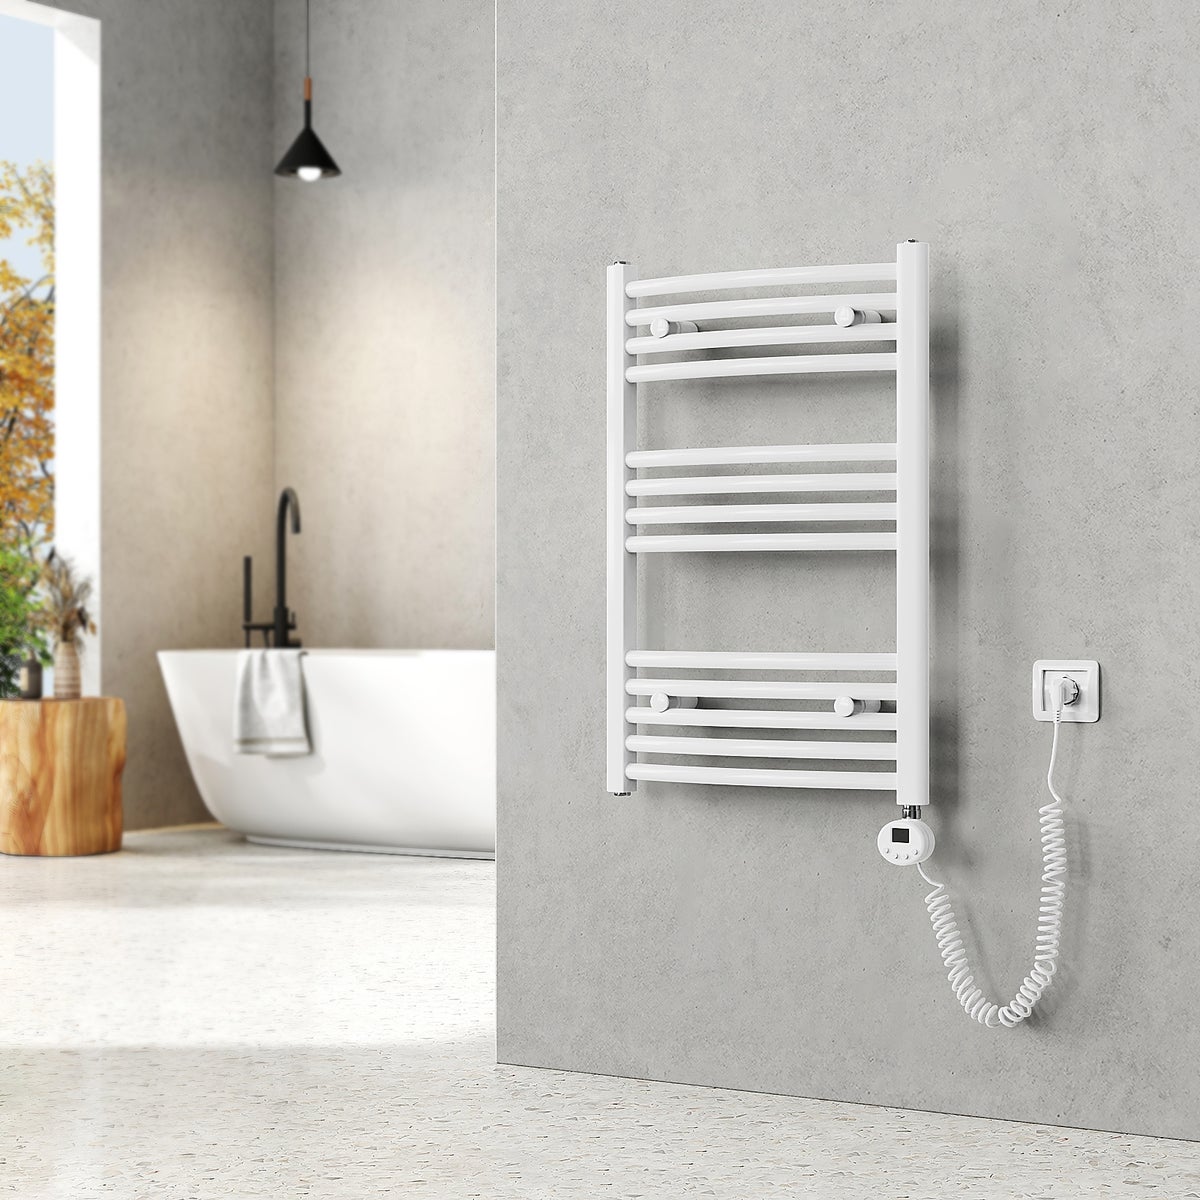 EMKE Elektrischer Badheizkörper Gebogen Badheizkörper Elektrisch mit Thermostat, Handtuchtrockner mit Heizstab,Weiß,75x50cm,292W